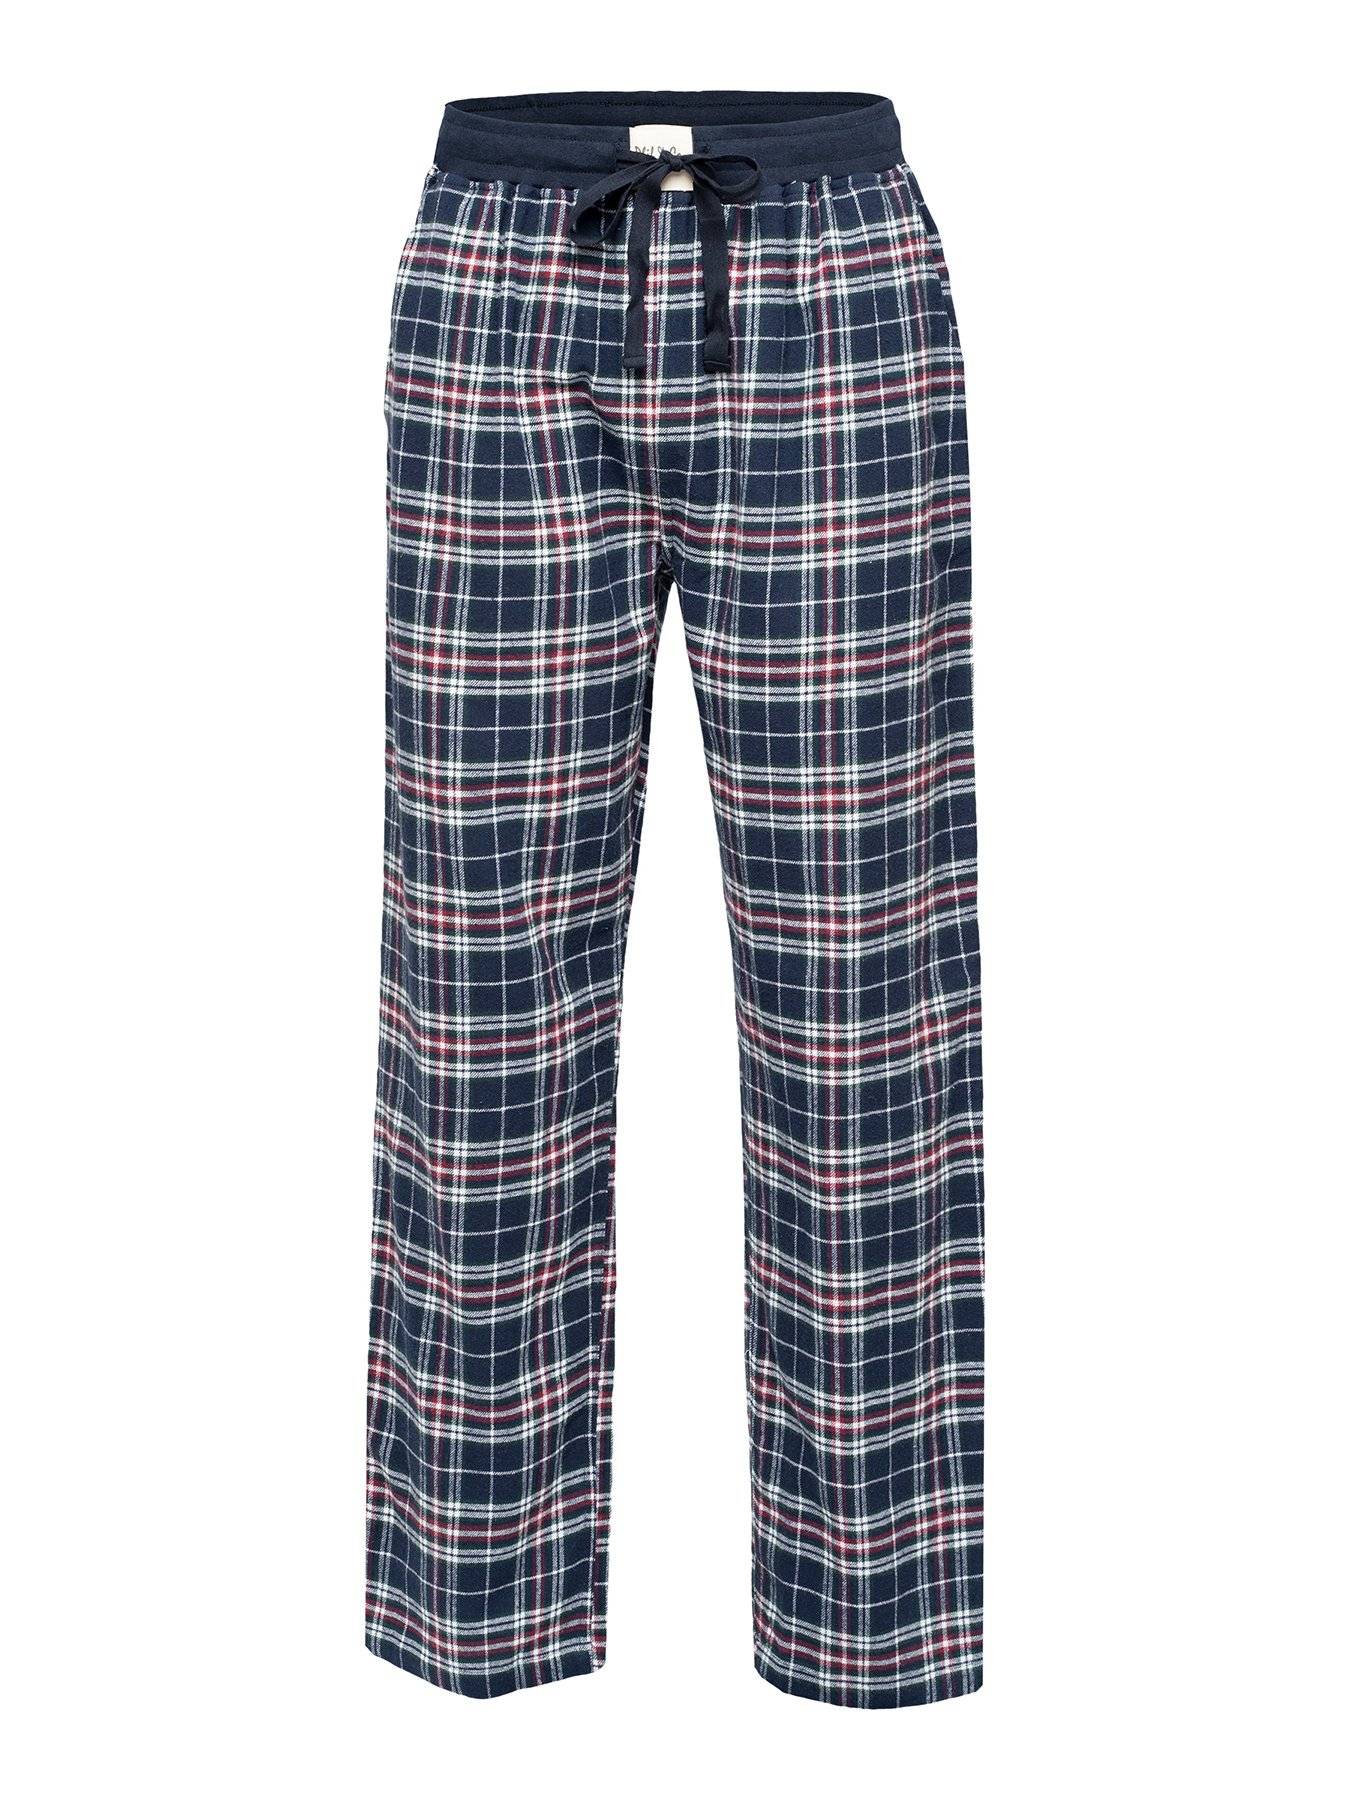 Knuppel lepel Grommen Phil & Co Heren Pyjamabroek Lang Geruit Flanel Rood | Underwear District